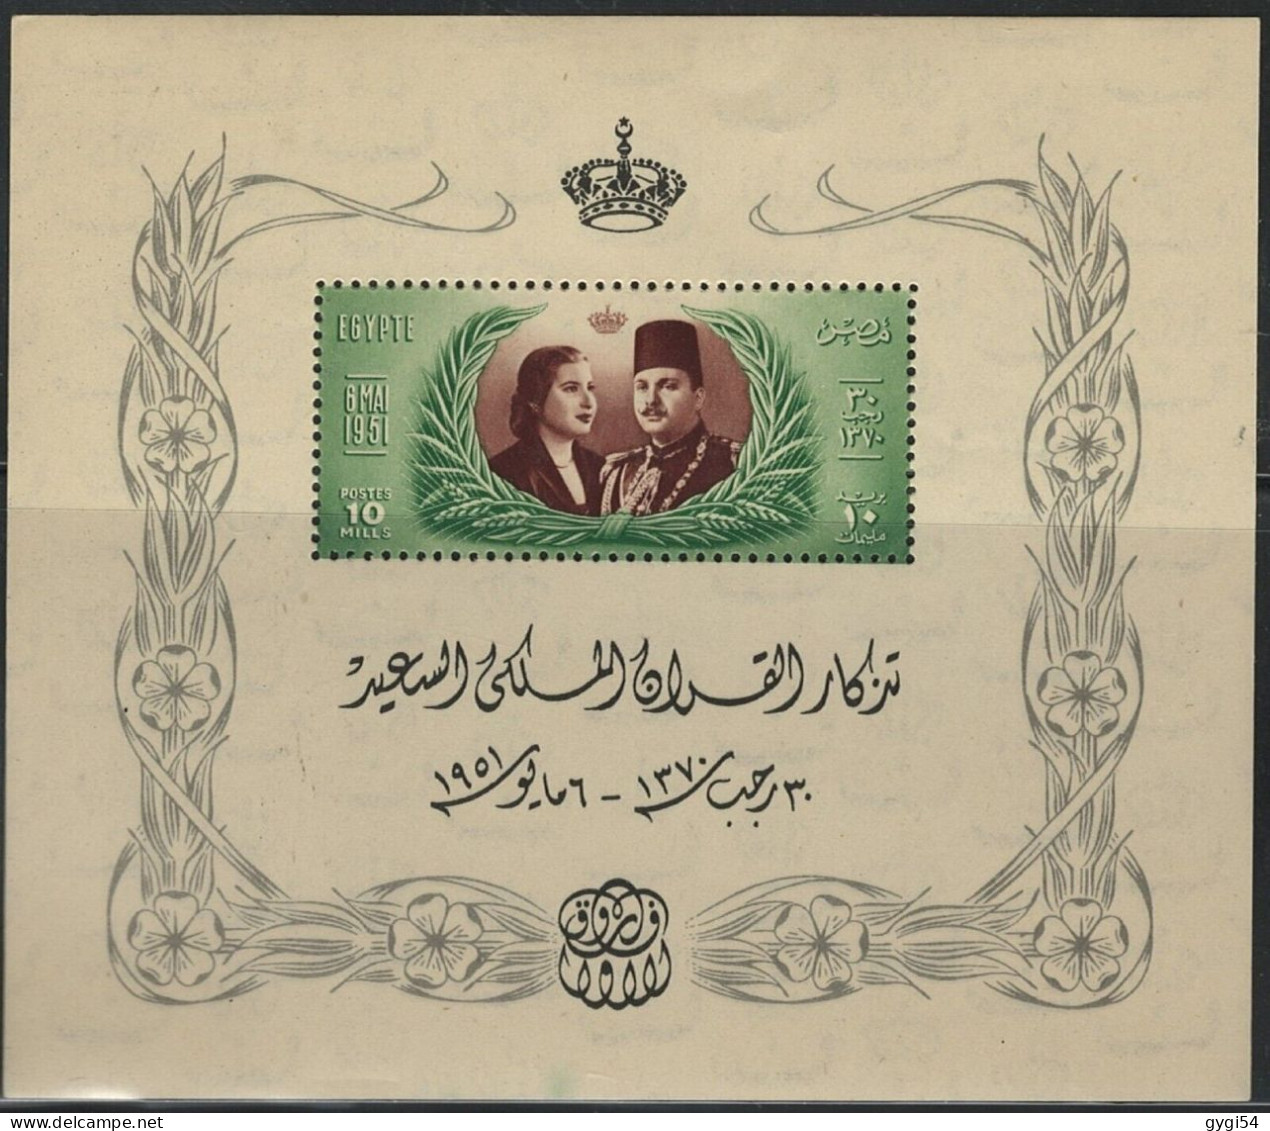 EGYPTE-1951 2   MARIAGE DU ROI FAROUK-NAREMAN-FEUILLE SOUVENIR-MNH - Blocs-feuillets